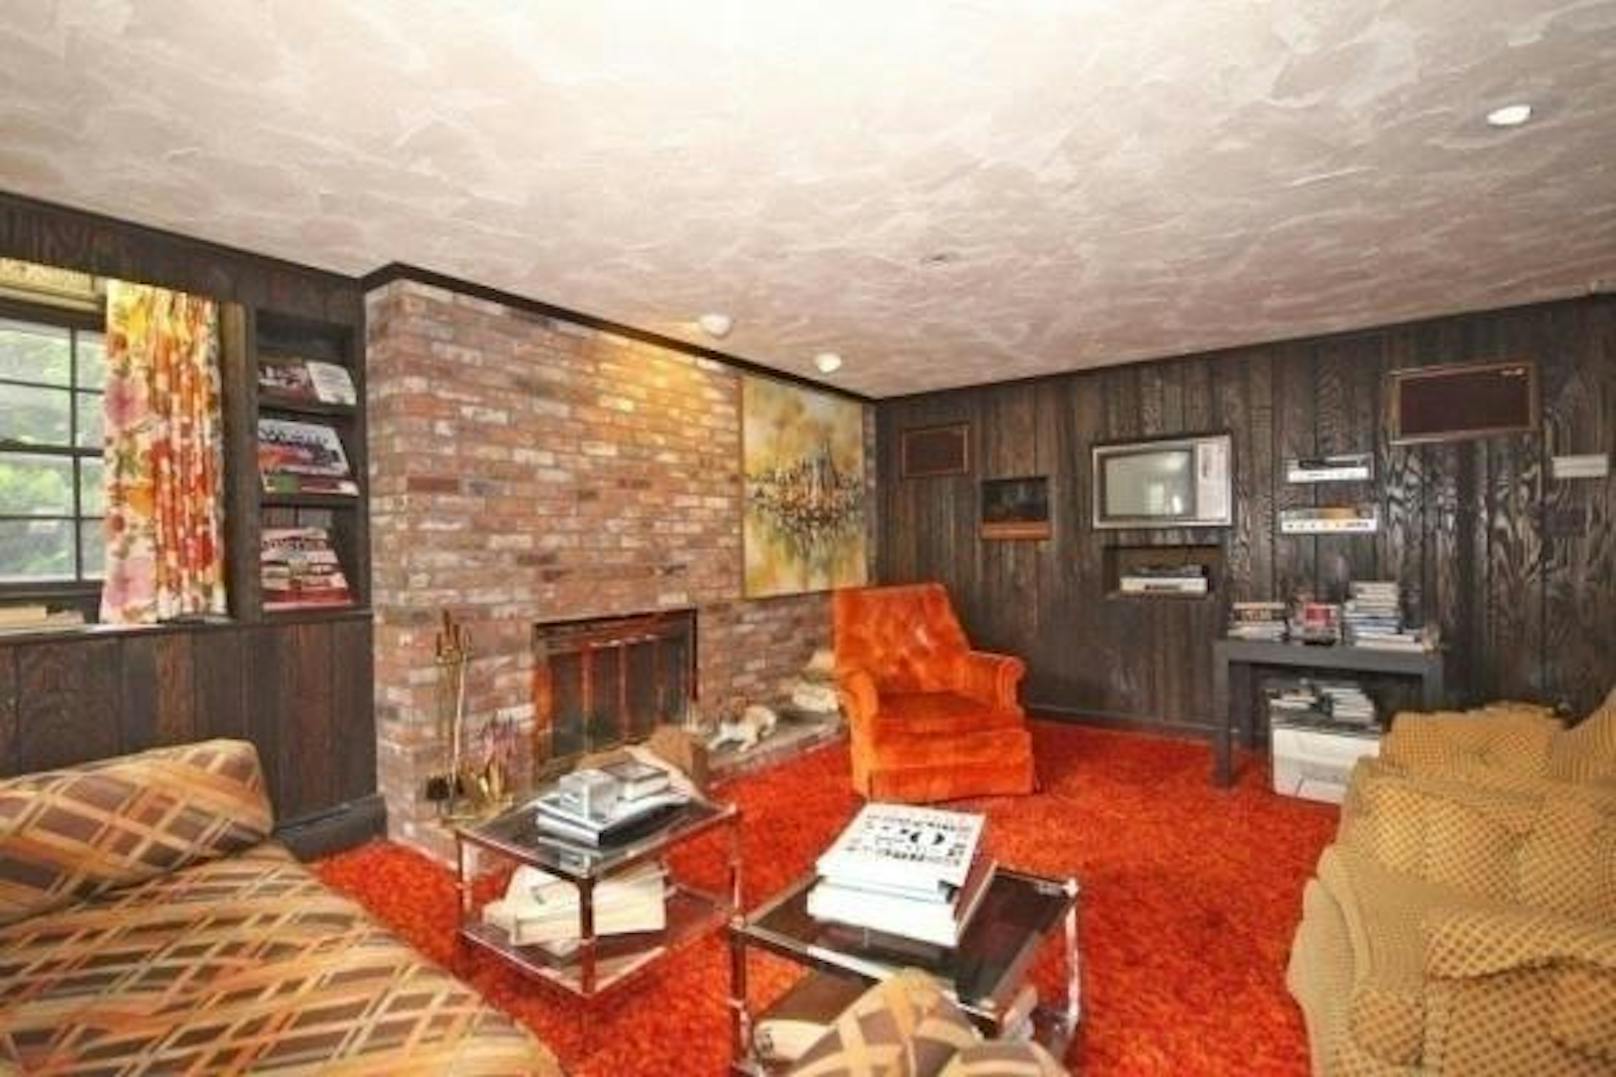 Das Haus hat 334 Quadratmeter. Ein kultiger, oranger Flauschteppich und der passende Sessel zieren das Wohnzimmer.